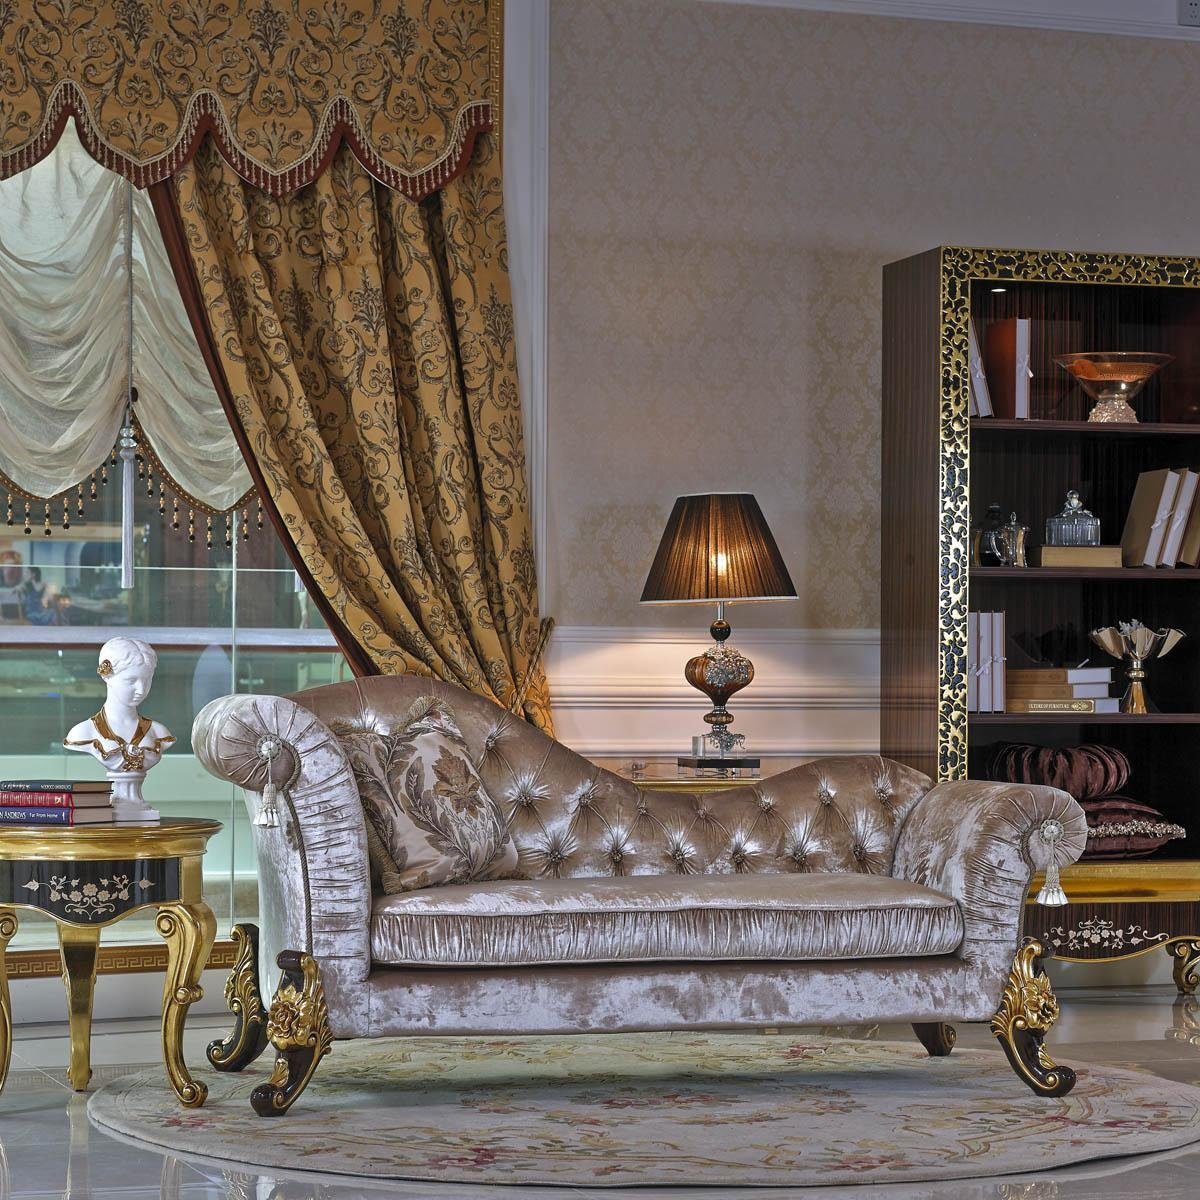 JVmoebel Chaiselongue, Chaiselounge Antik Stil Sofa Liege Textil Barock Rokoko Couch Liegen | Chaiselongues